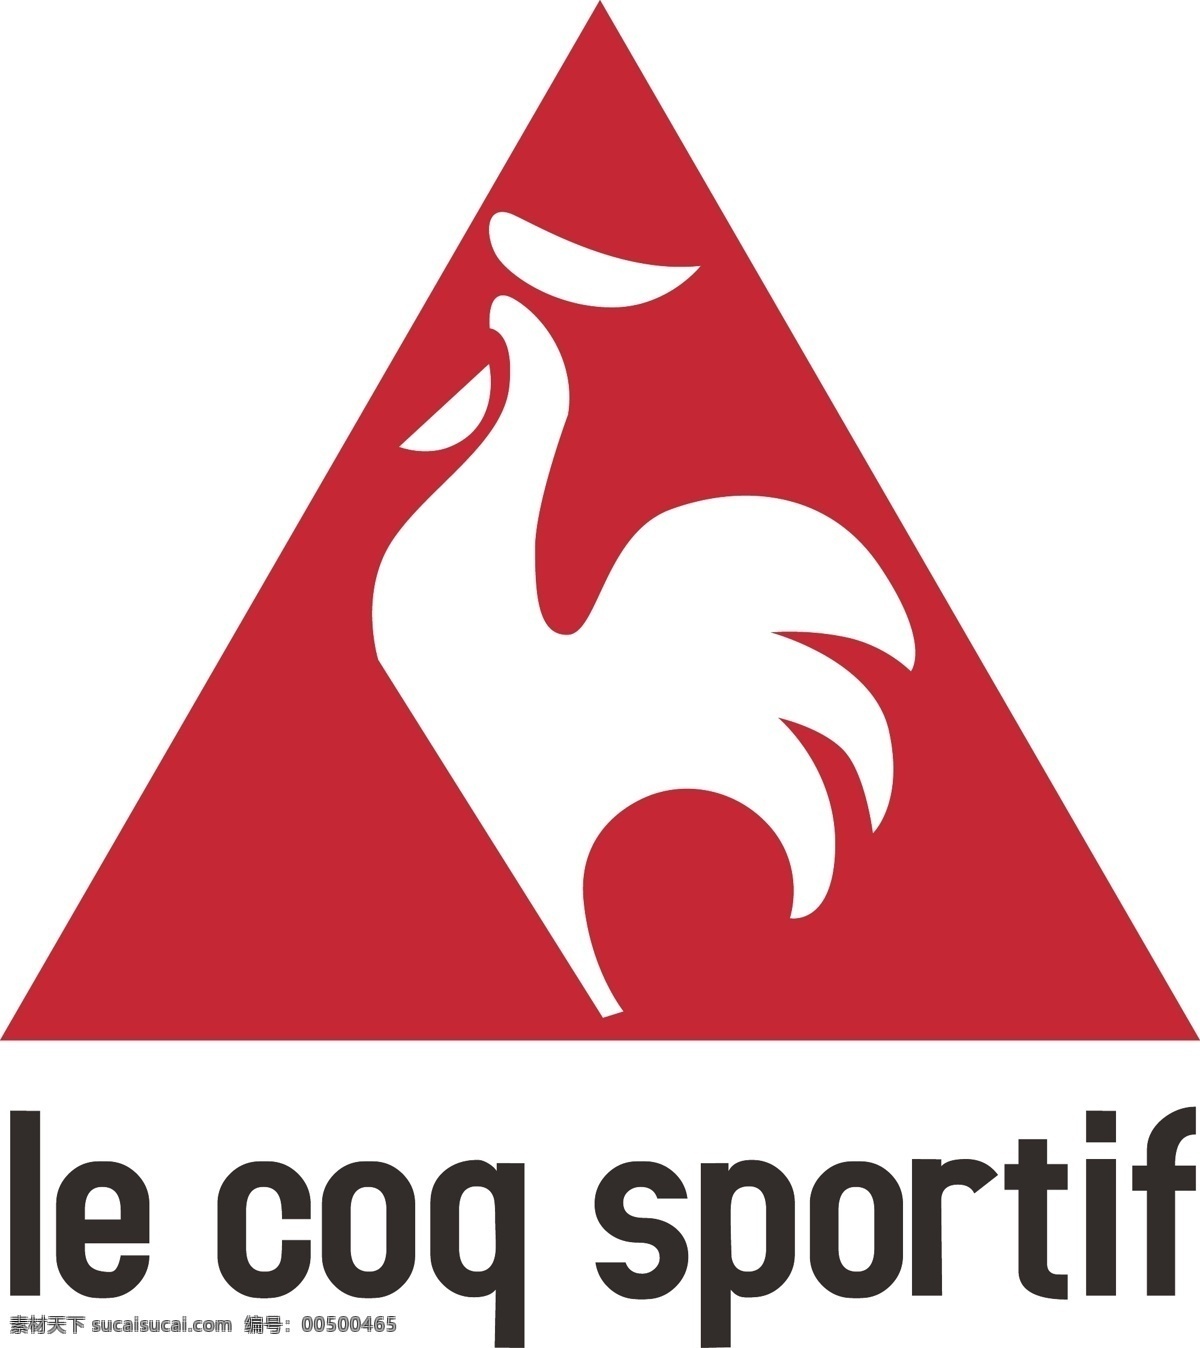 法国 公鸡 logo 标识 法国公鸡 le coq sportif 矢量 psd源文件 logo设计